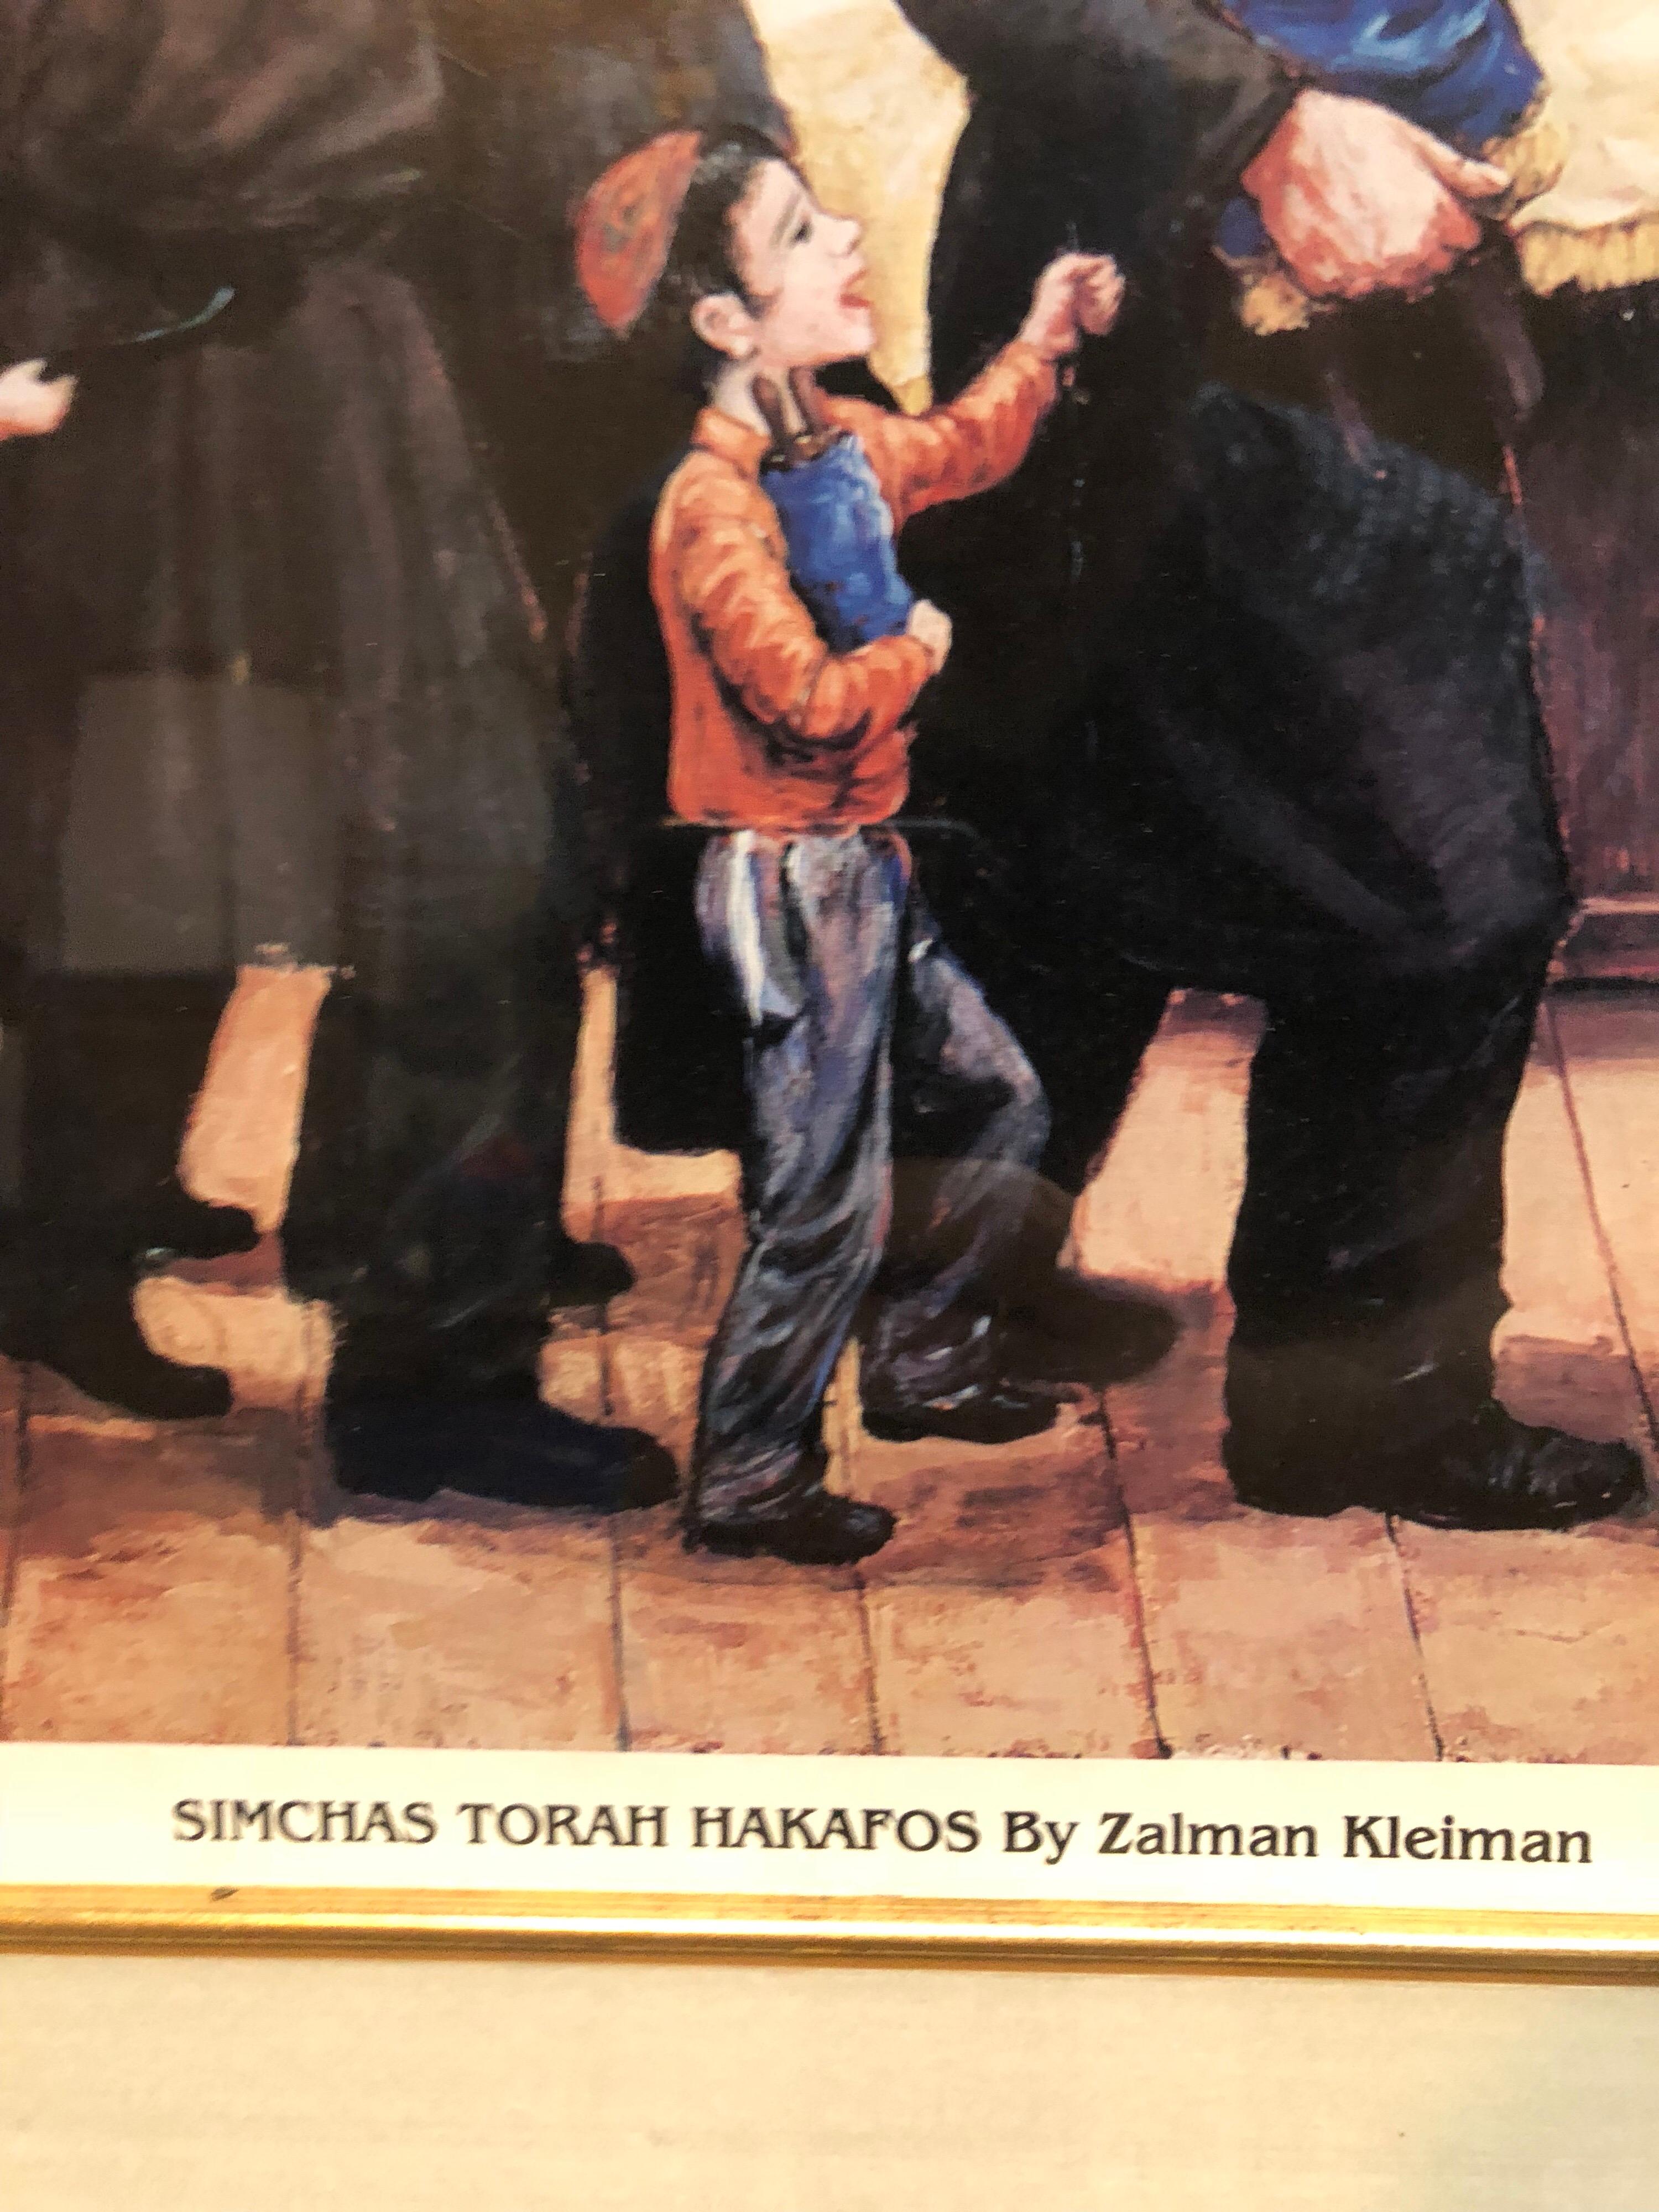 Vintage gerahmt Platte signiert Poster. 
Zalman Kleiman, geboren 1933 in Leningrad, Russland, in einer chassidischen Familie der Lubawitscher, war ein autodidaktischer chassidischer Künstler, der in Crown Heights, Brooklyn, New York, lebte. Im